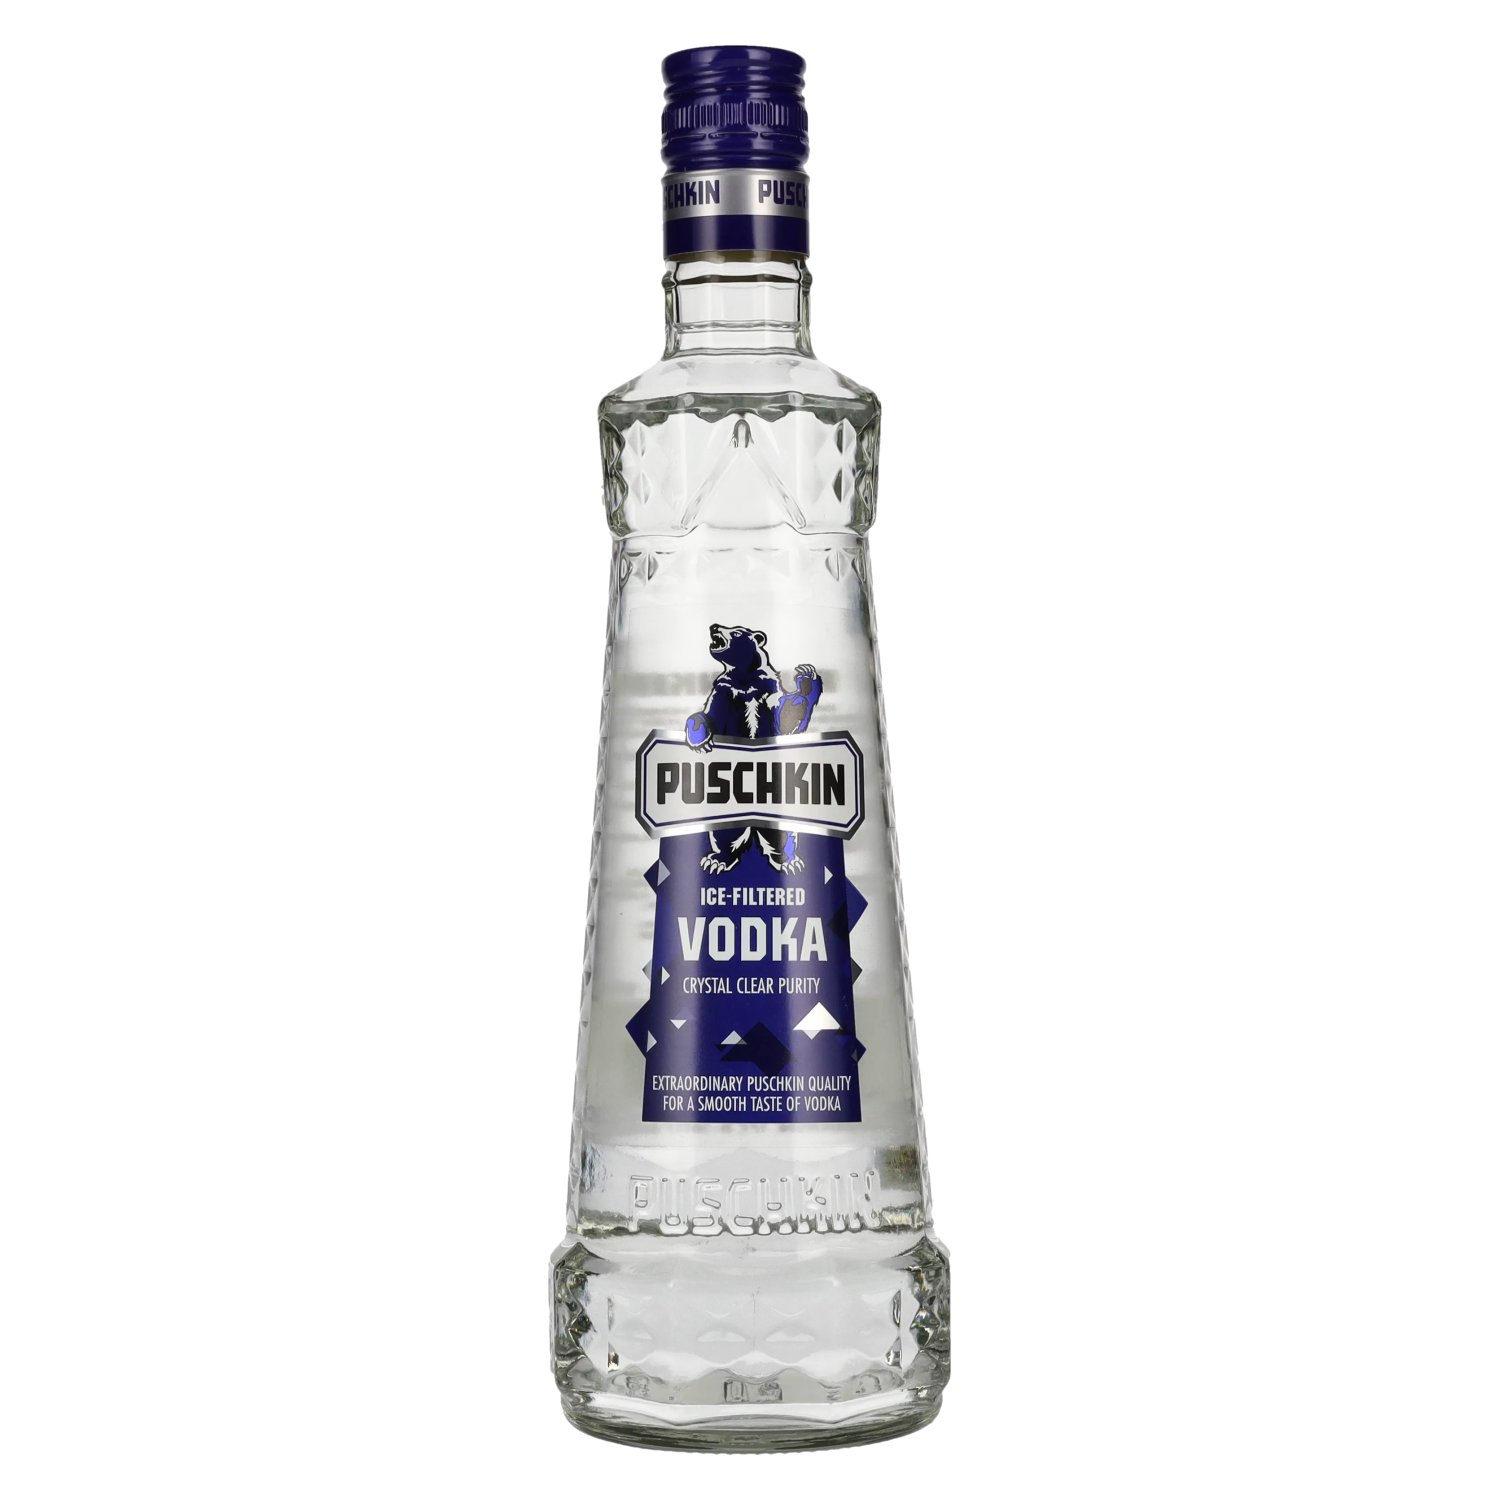 Puschkin Ice-Filtered Vodka 37,5% 0,7l - Vol. delicando